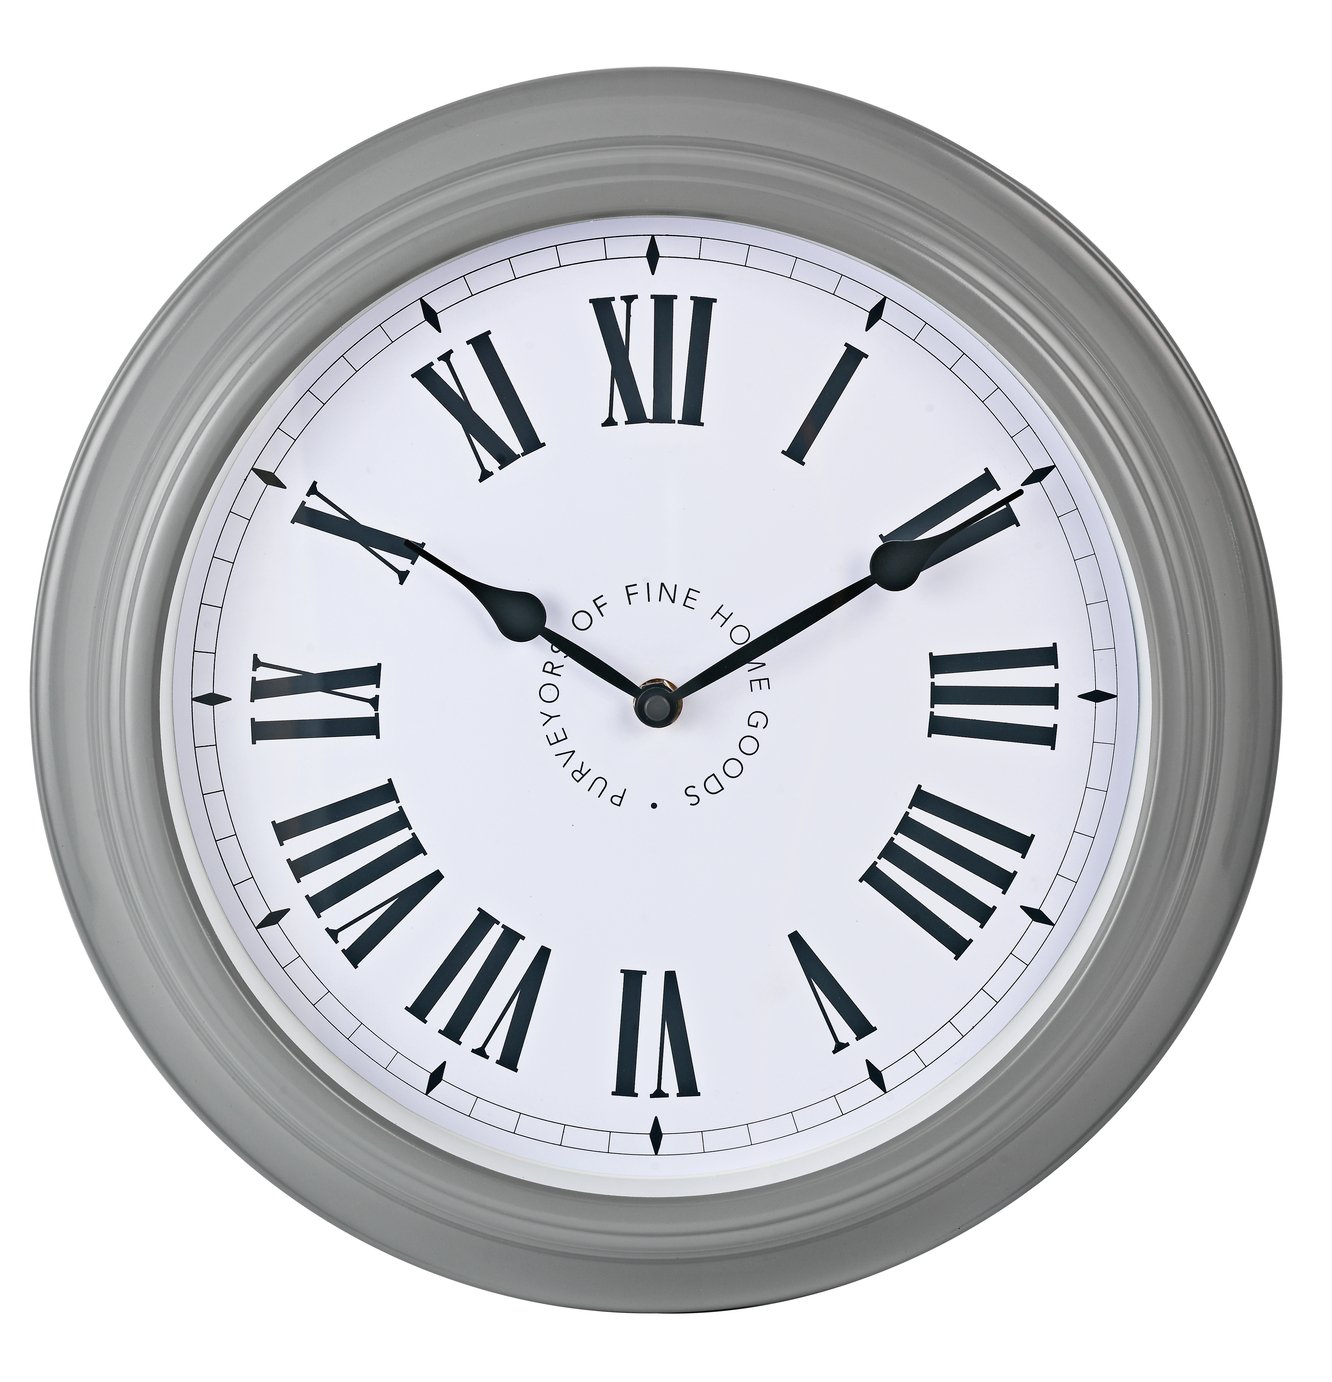 Argos Home Stationary Wall Clock - Grey